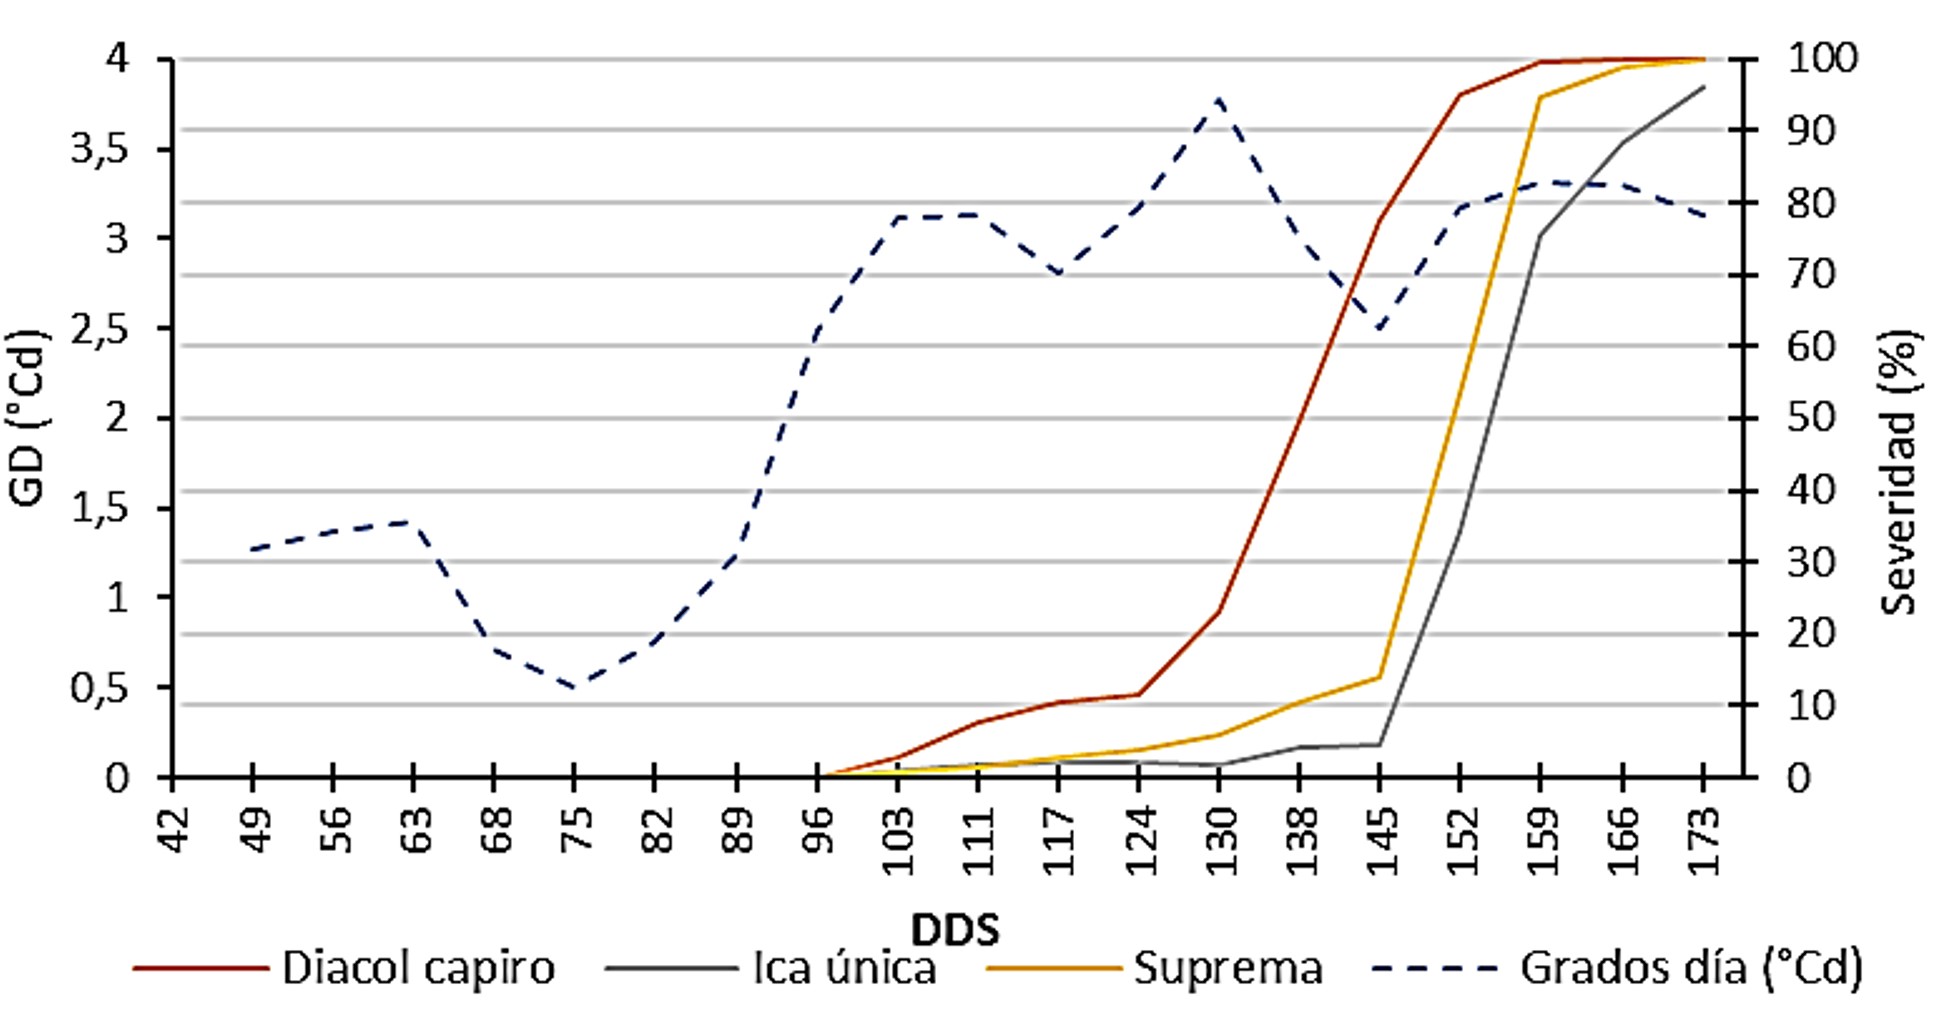 Relación de la severidad del tizón tardío (P. infestans) e índice hídrico en tres variedades de papa durante los meses de diciembre 2015 a mayo 2016 en un ciclo de cultivo (173 días después de siembra - dds).